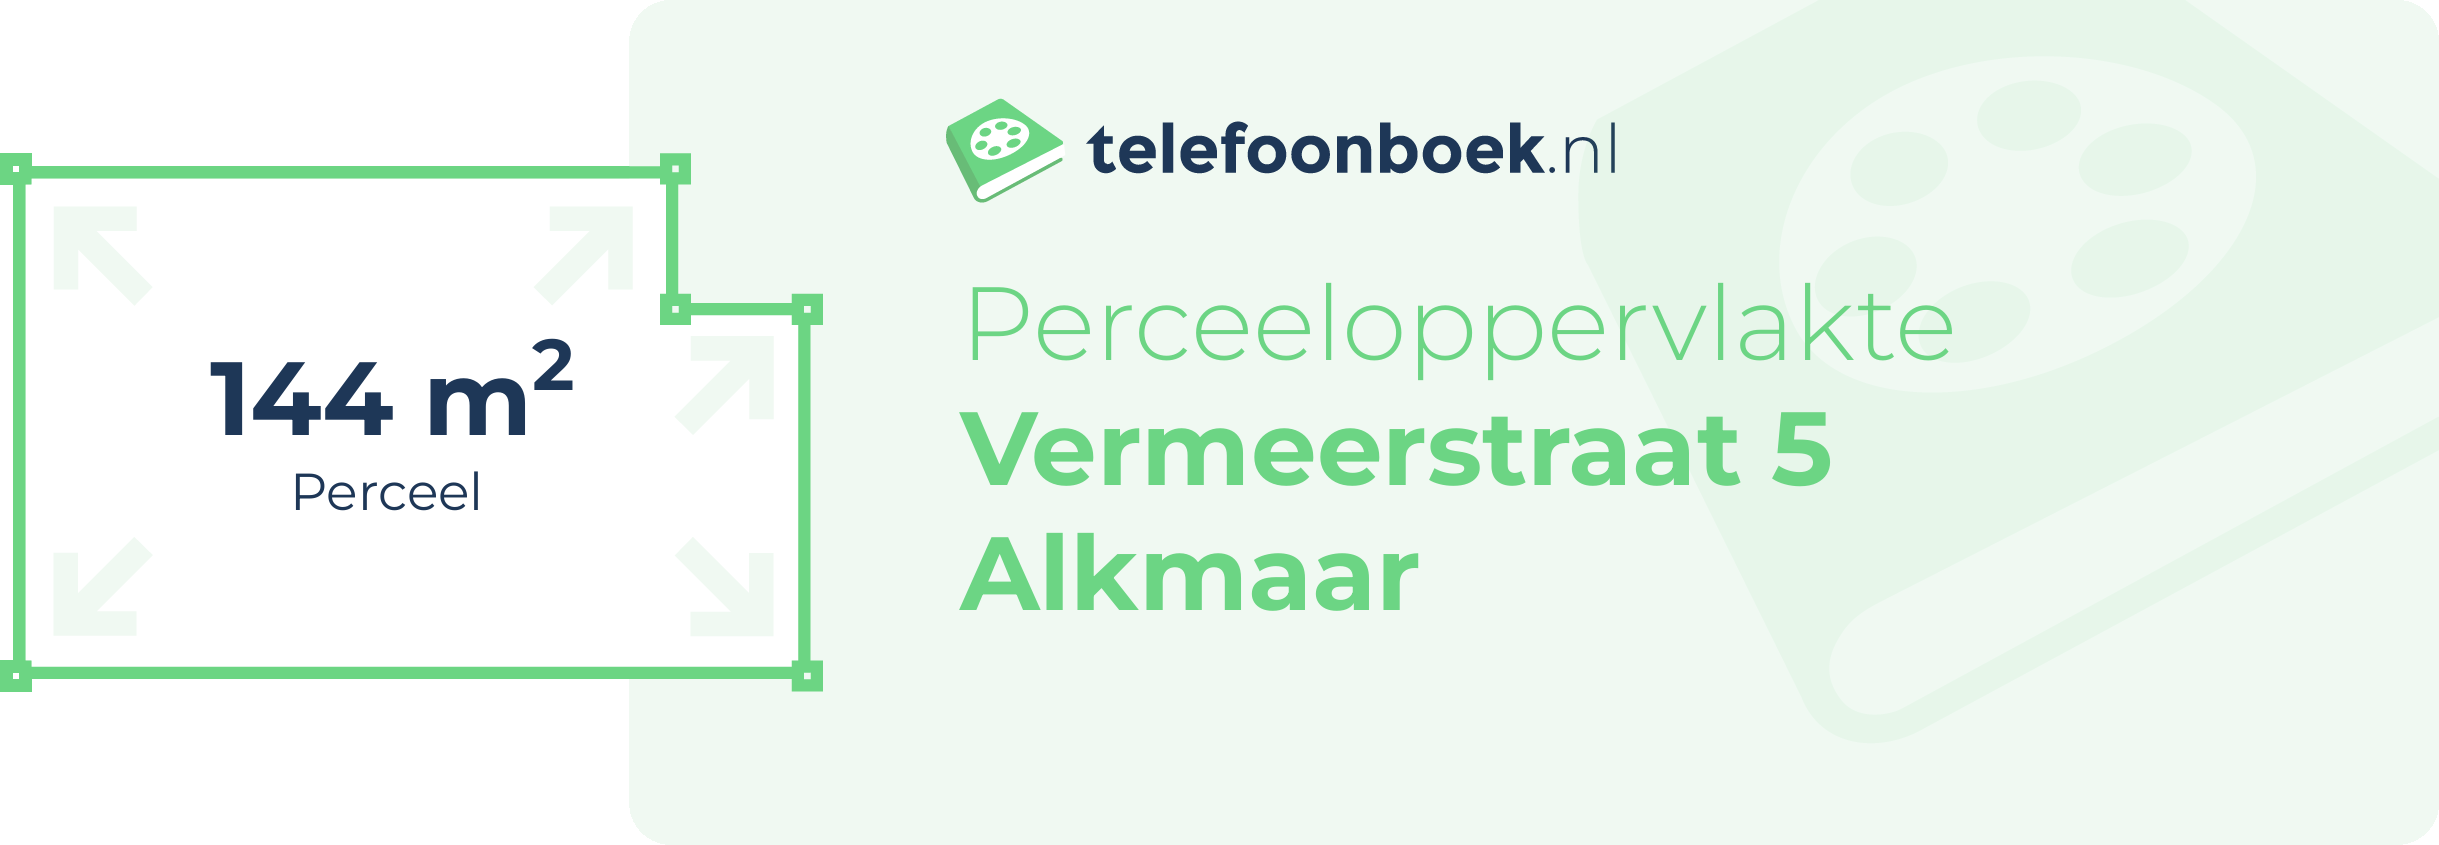 Perceeloppervlakte Vermeerstraat 5 Alkmaar